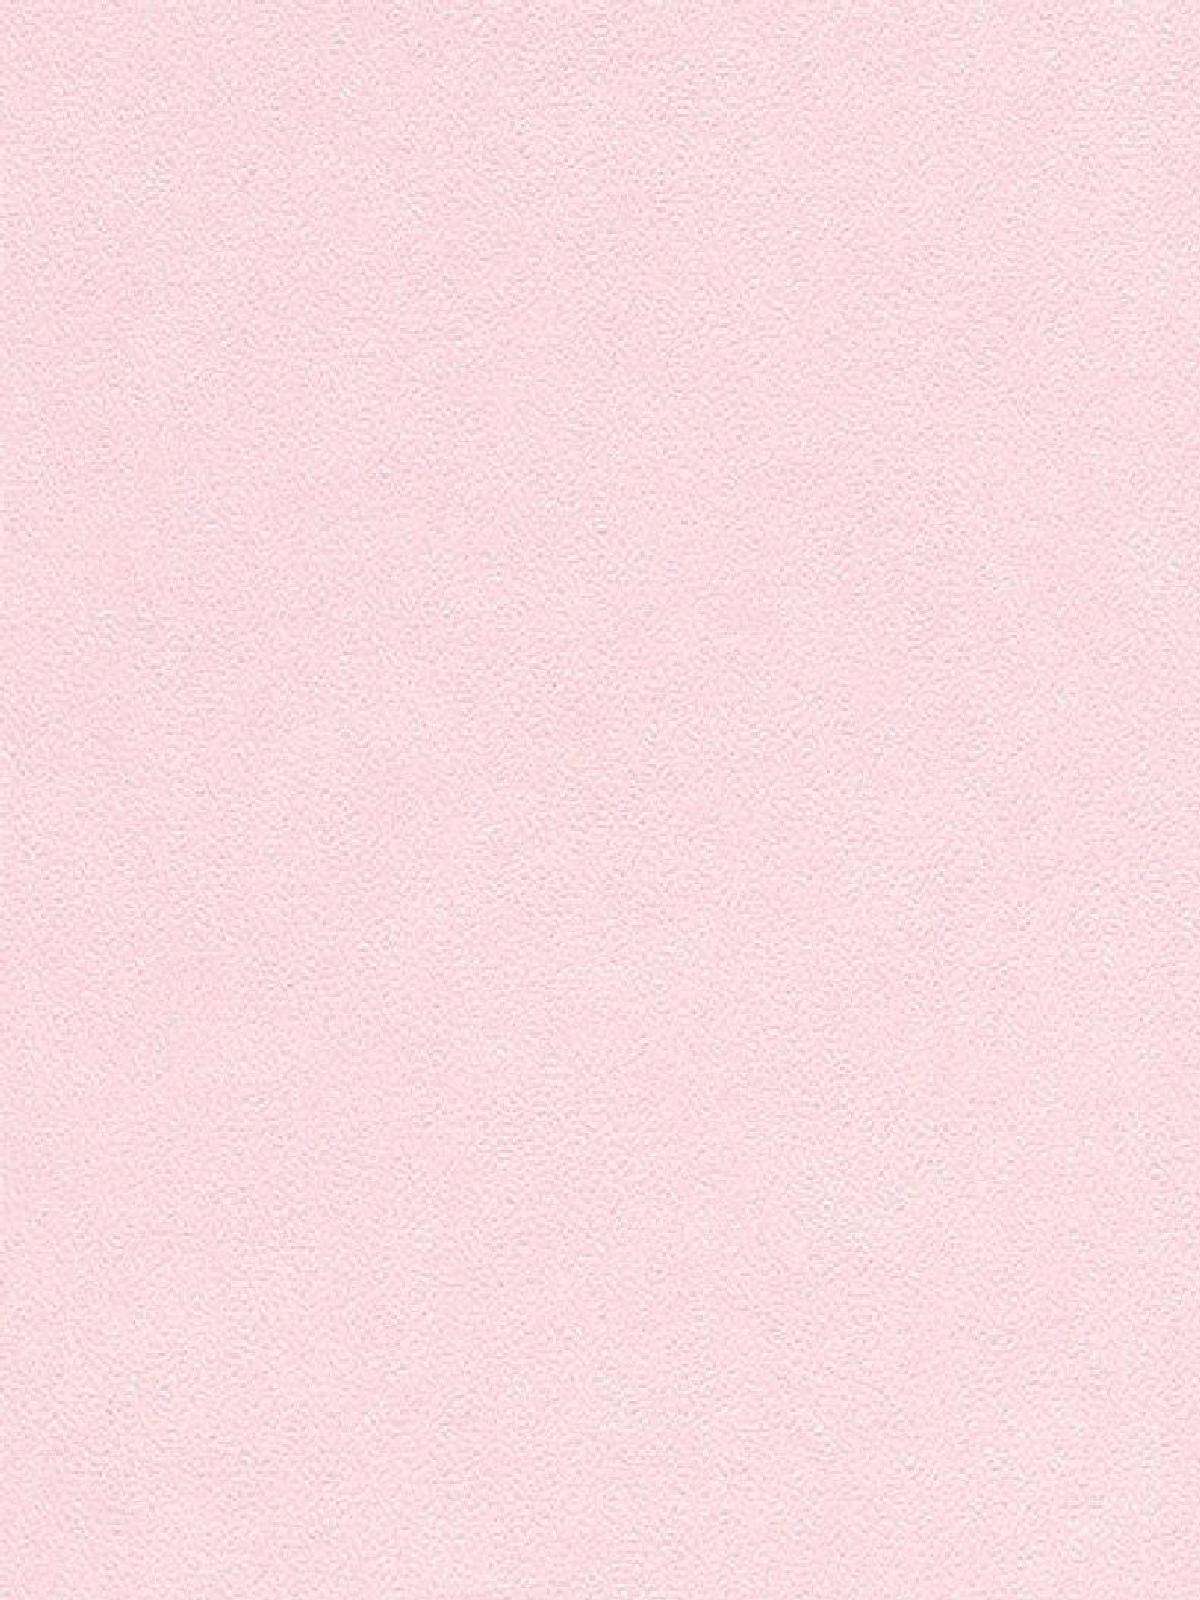 Más de 35 fondos de pantalla de color rosa pálido - Descarga